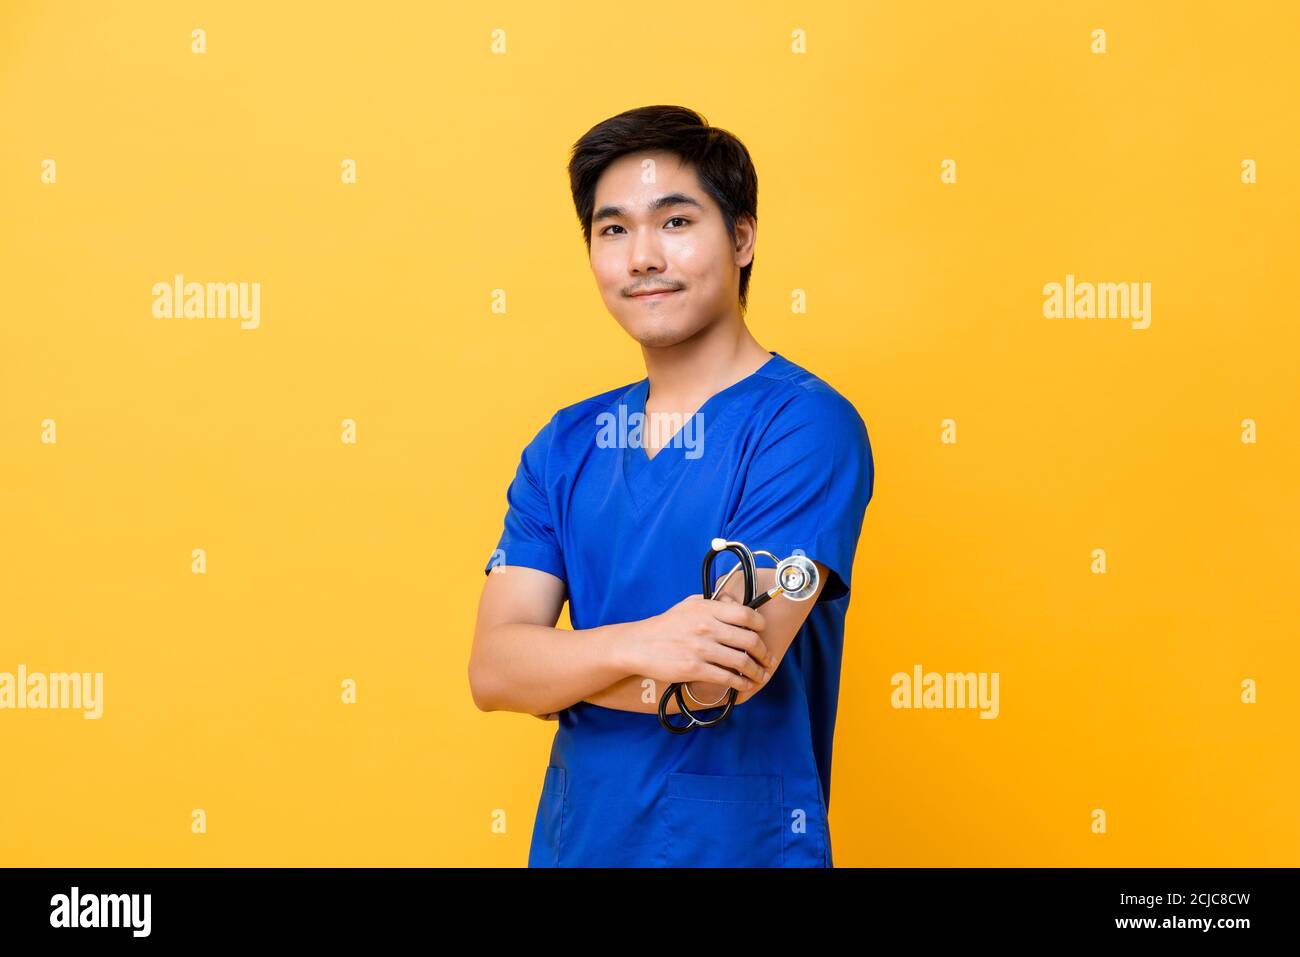 Jeune beau médecin asiatique homme souriant et faisant les bras croisés geste isolé sur fond jaune Banque D'Images